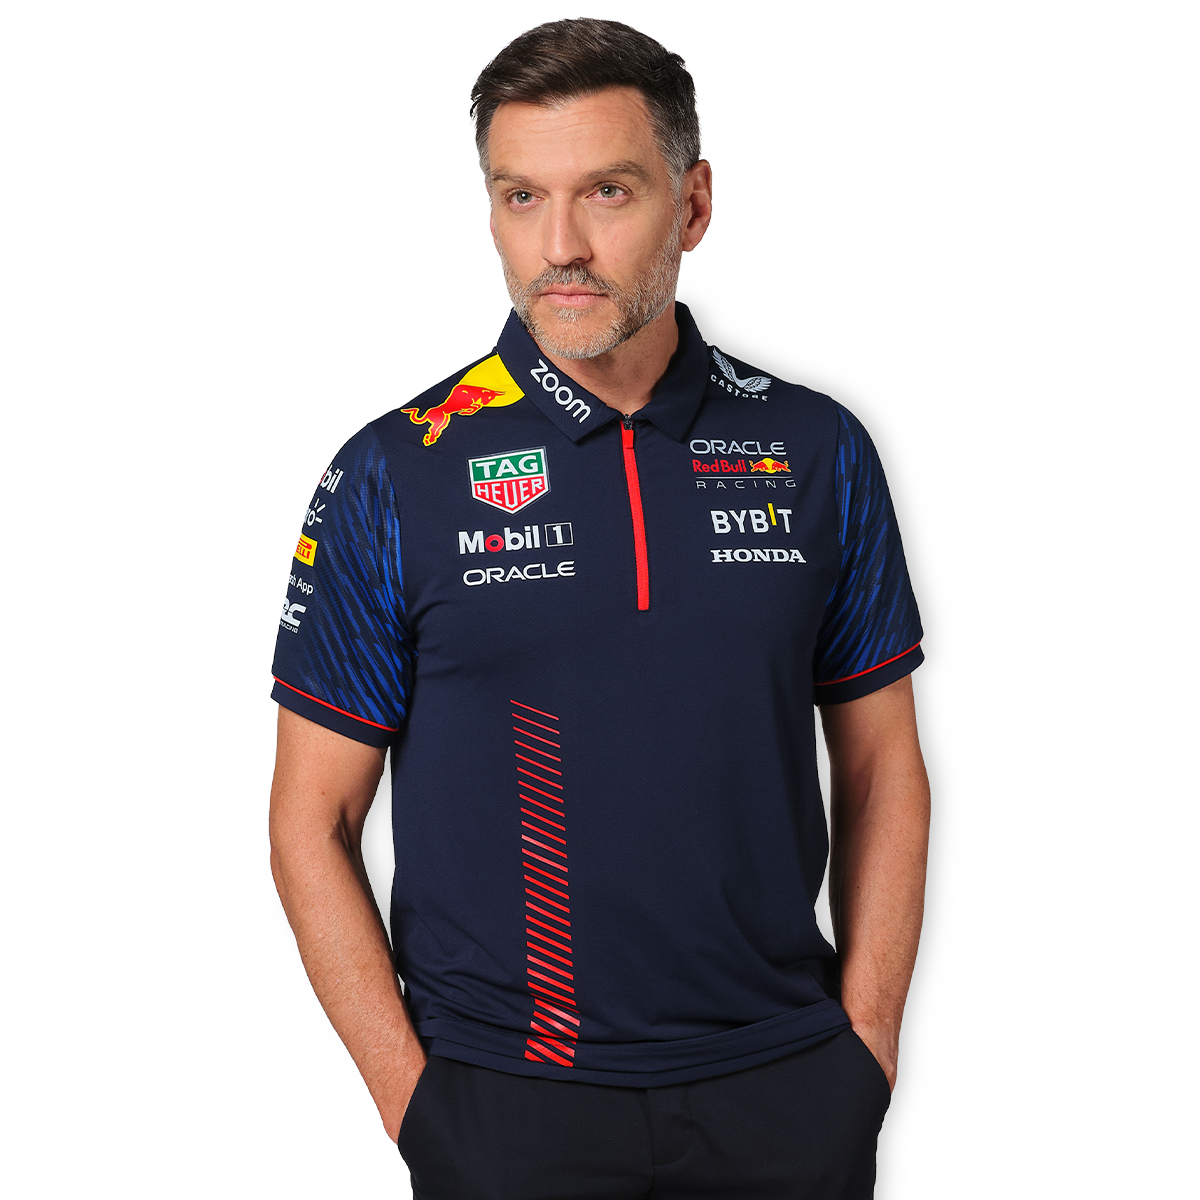 Castore Red Bull Racing Merchandise